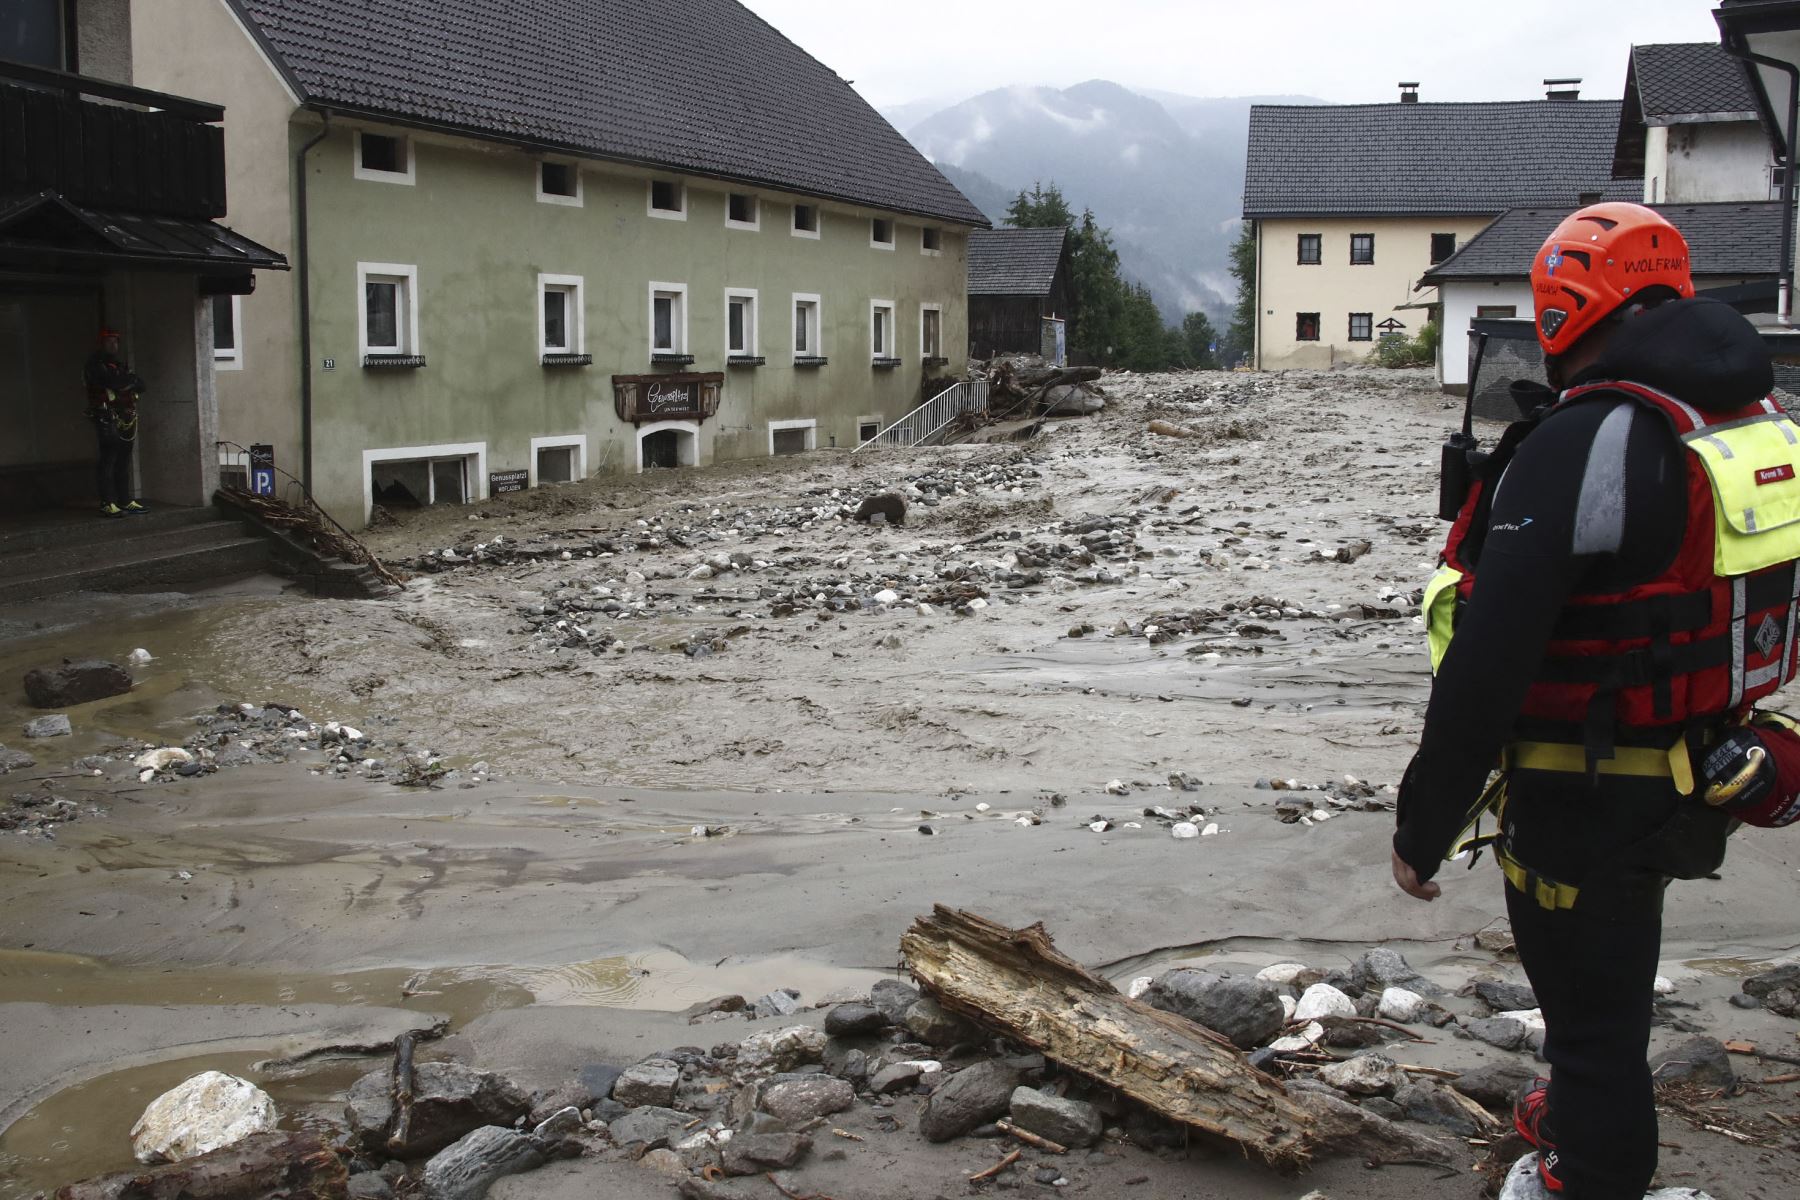 Los equipos de rescate se interponen entre un deslizamiento de tierra, madera, escombros y agua entre las casas dañadas después de las fuertes lluvias en Treffen, en el distrito de Villach-Land del estado de Carintia, Austria, el 29 de junio de 2022. Foto: AFP